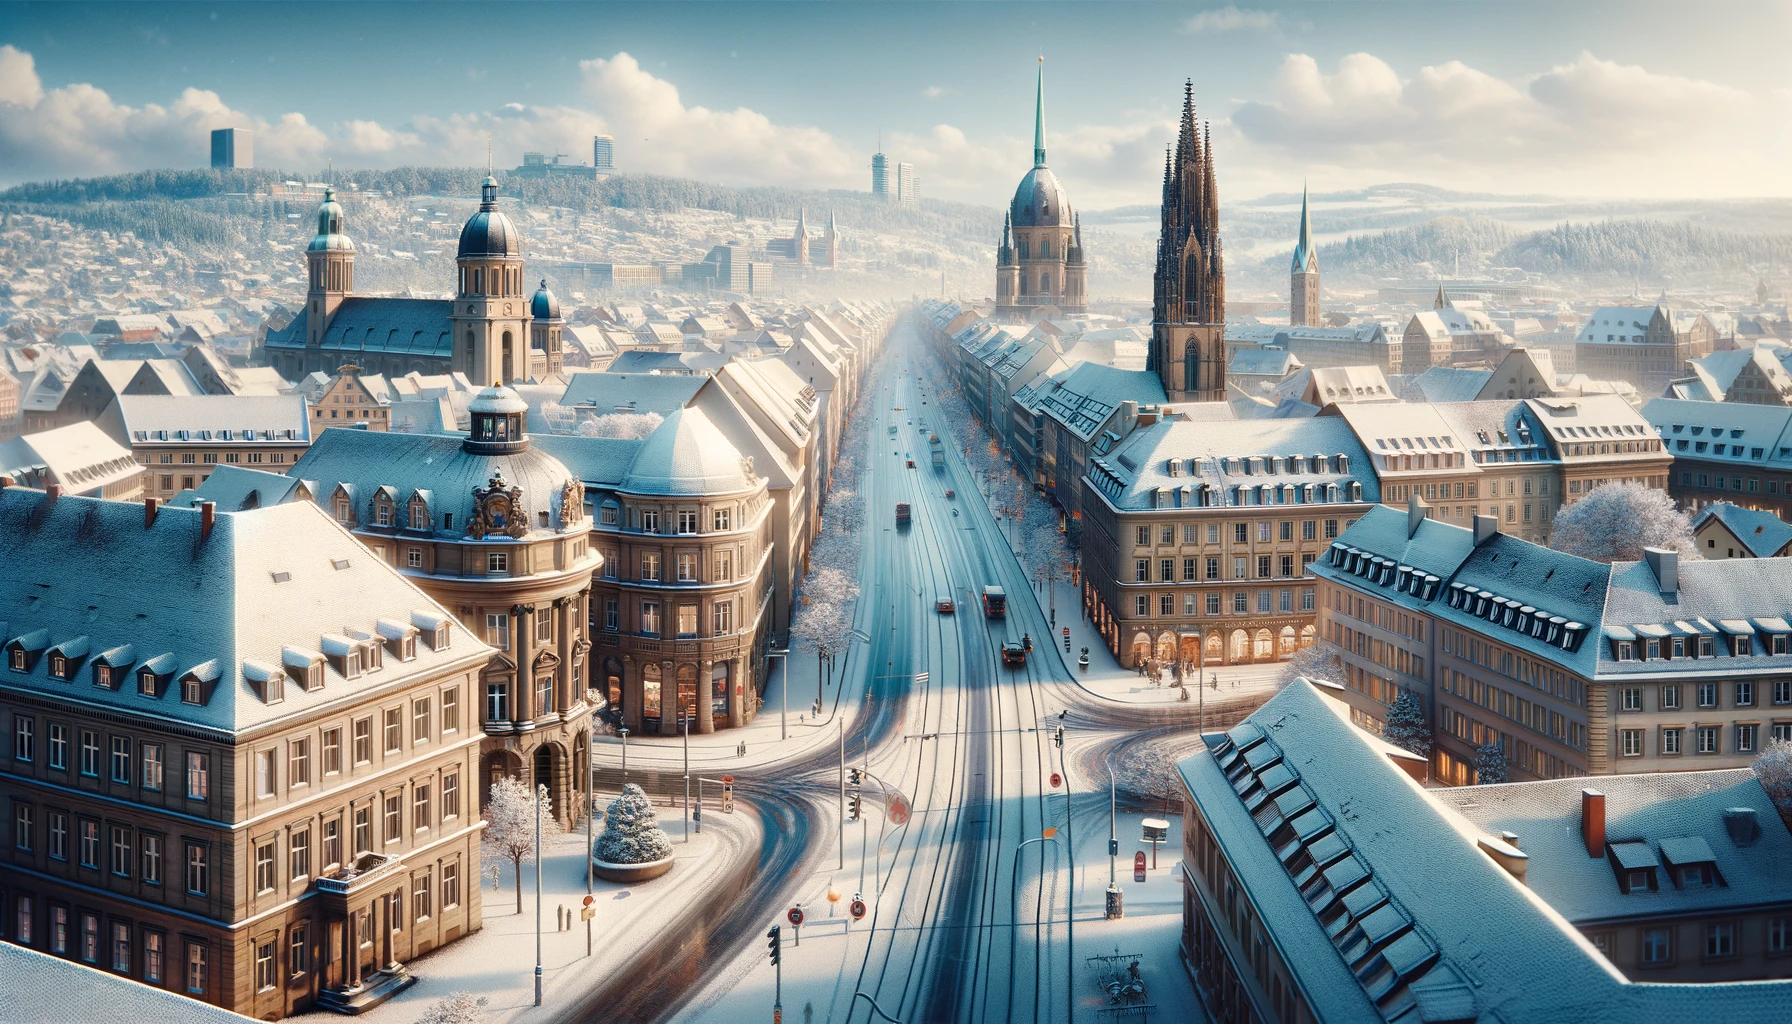 Zimowy widok Stuttgarta, zabytkowe budynki pokryte śniegiem